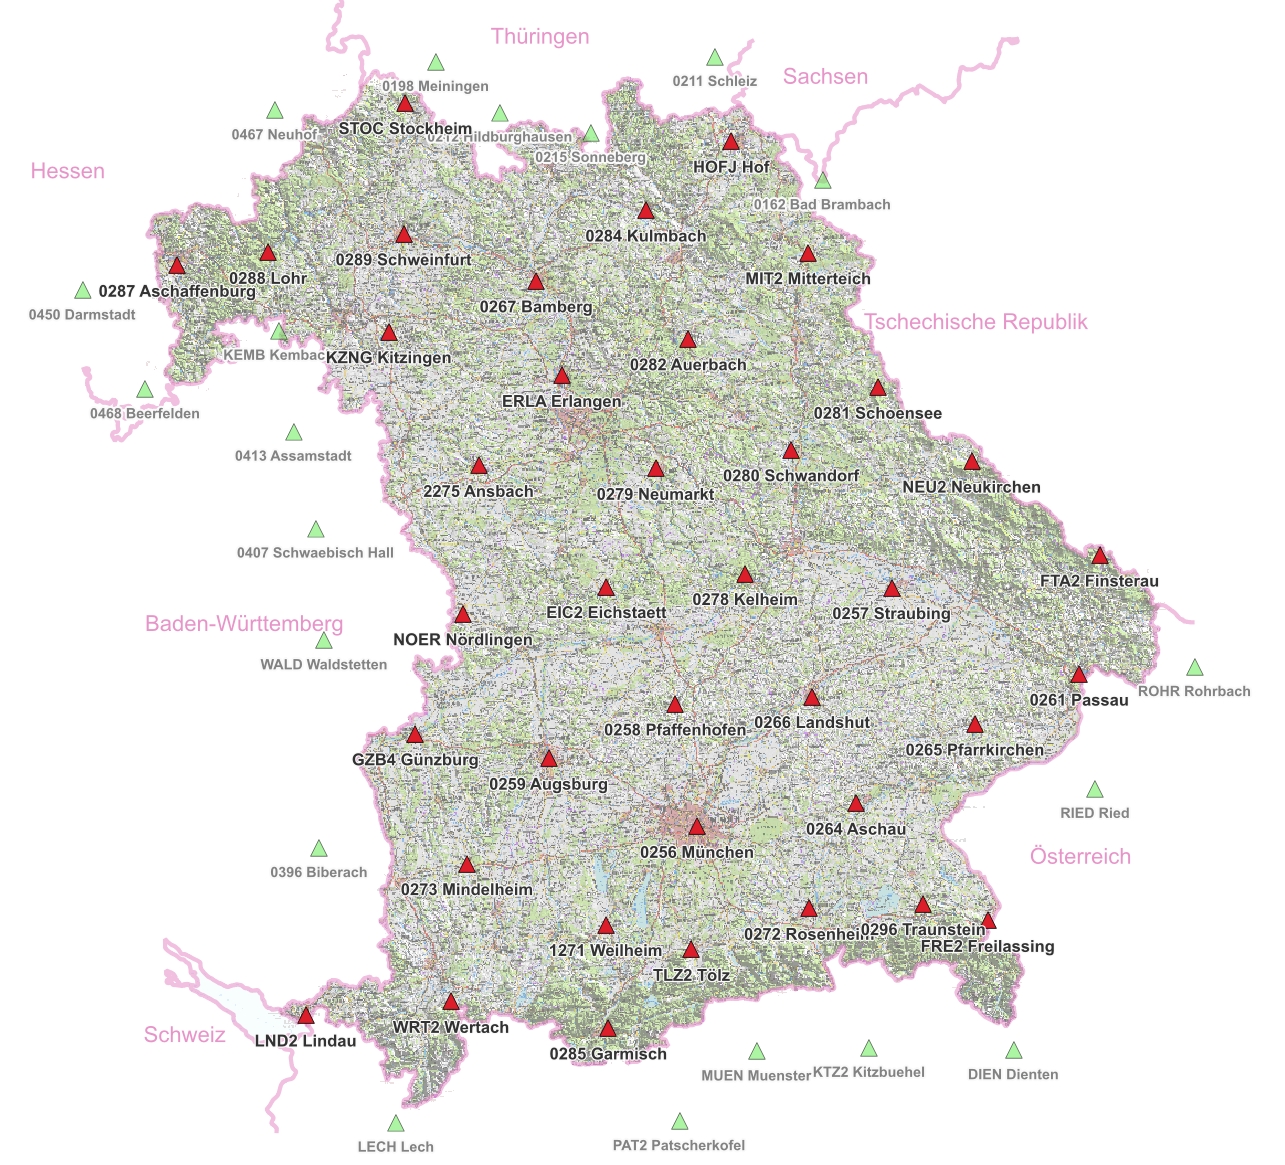 topographische Karte Bayerns hinterlegt mit SAPOS-Referenzstationen